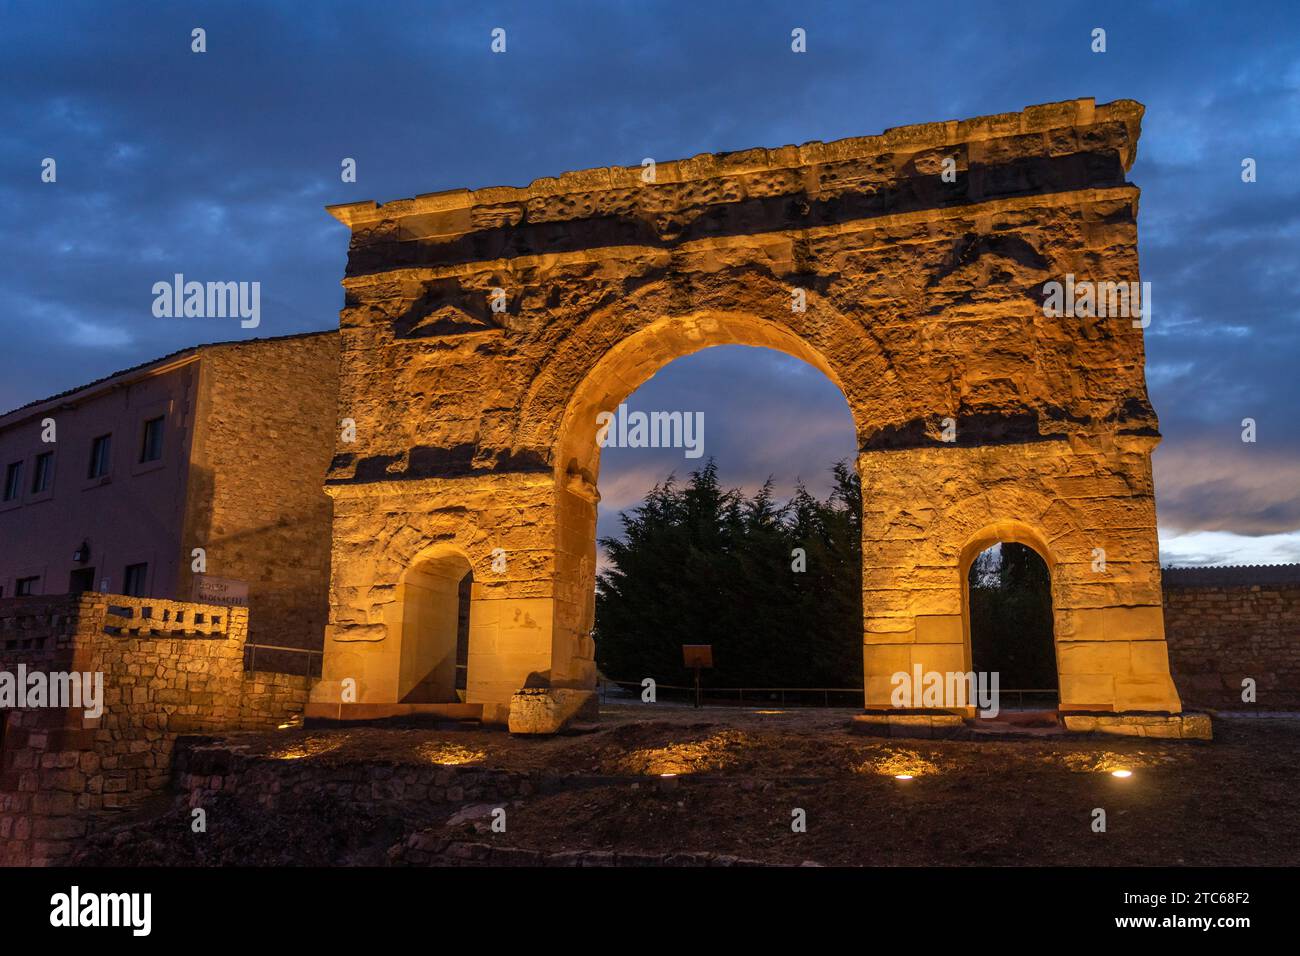 SPAGNA - 6 LUGLIO 2021: Arco di Medinacelli illuminato di notte. Soria, Castilla y Leon, Spagna. Foto Stock